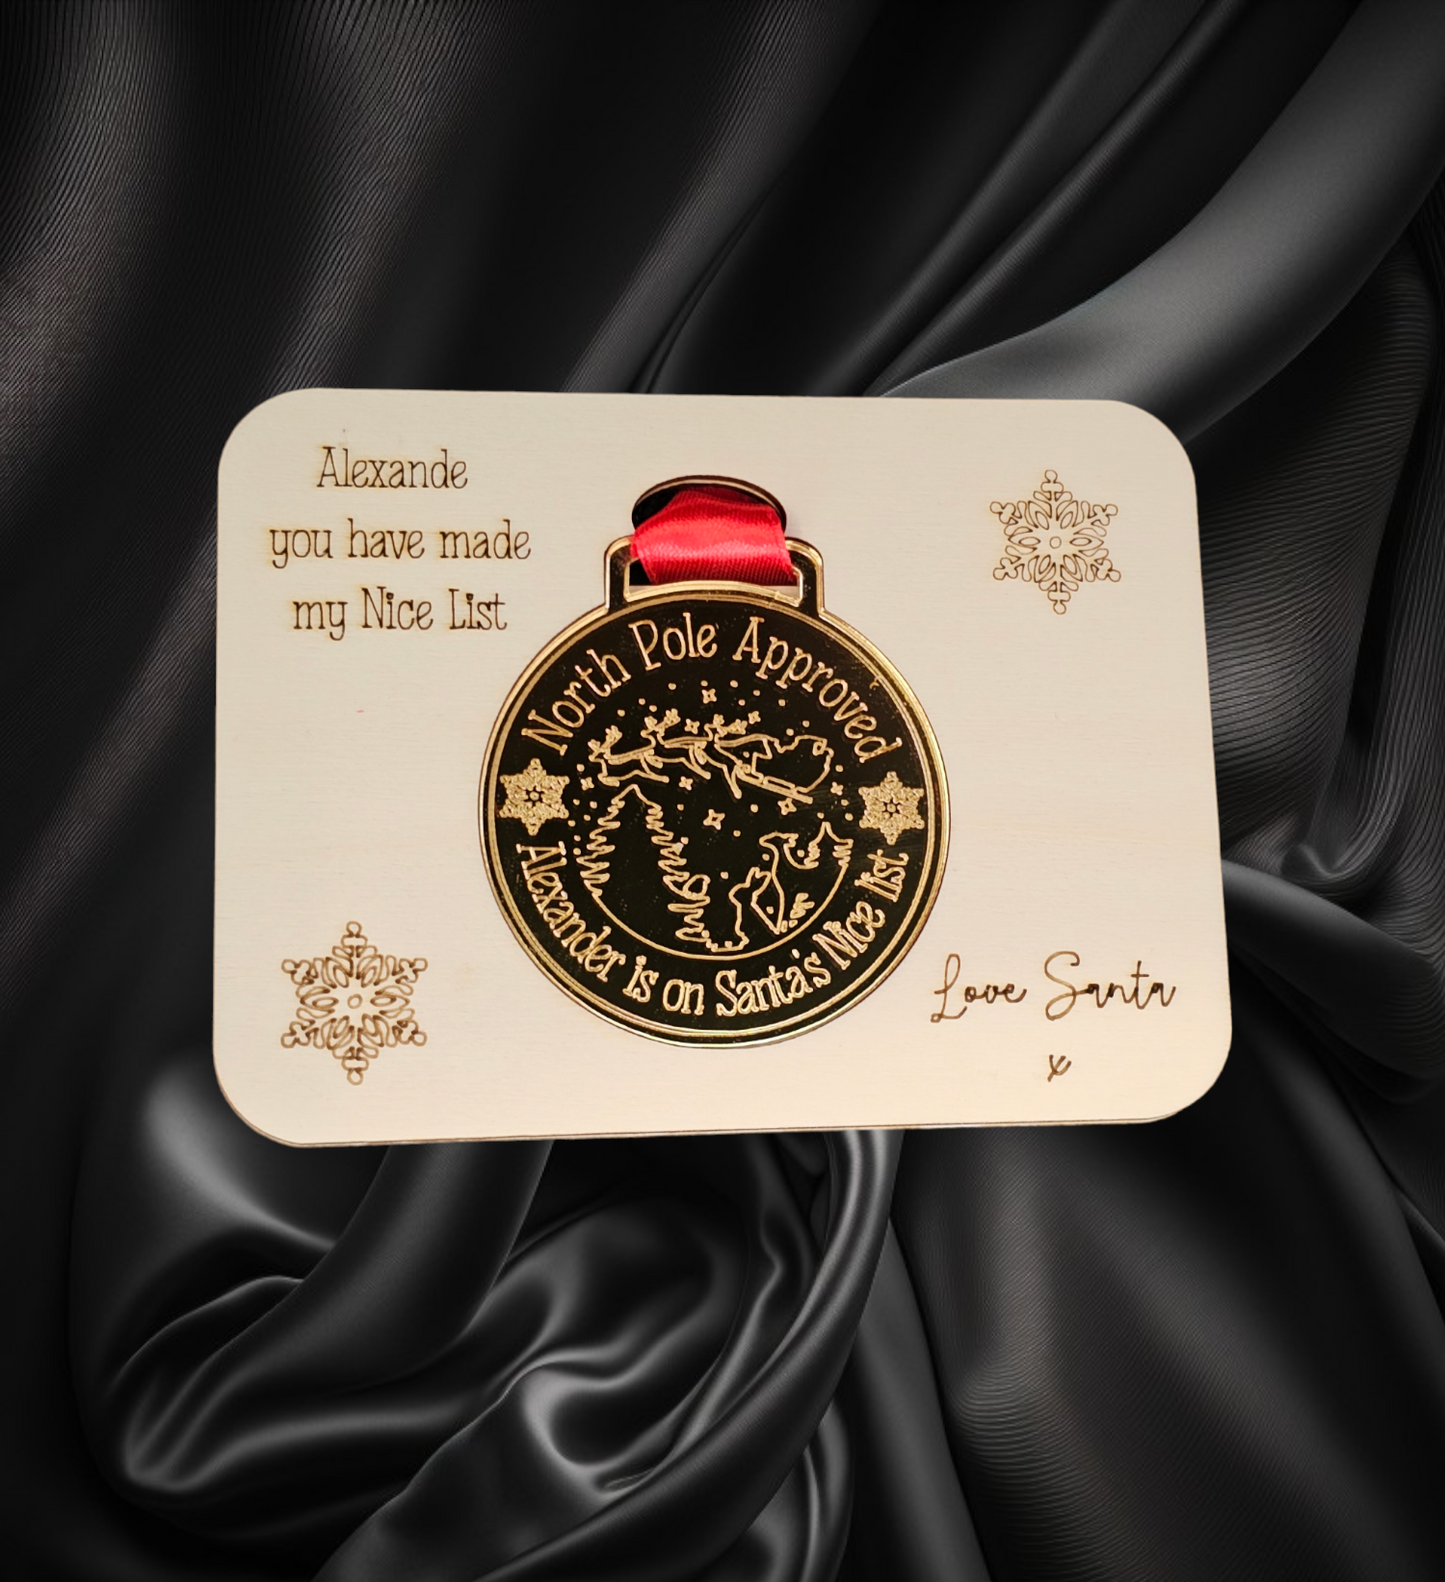 Personalised Santa's nice list medal